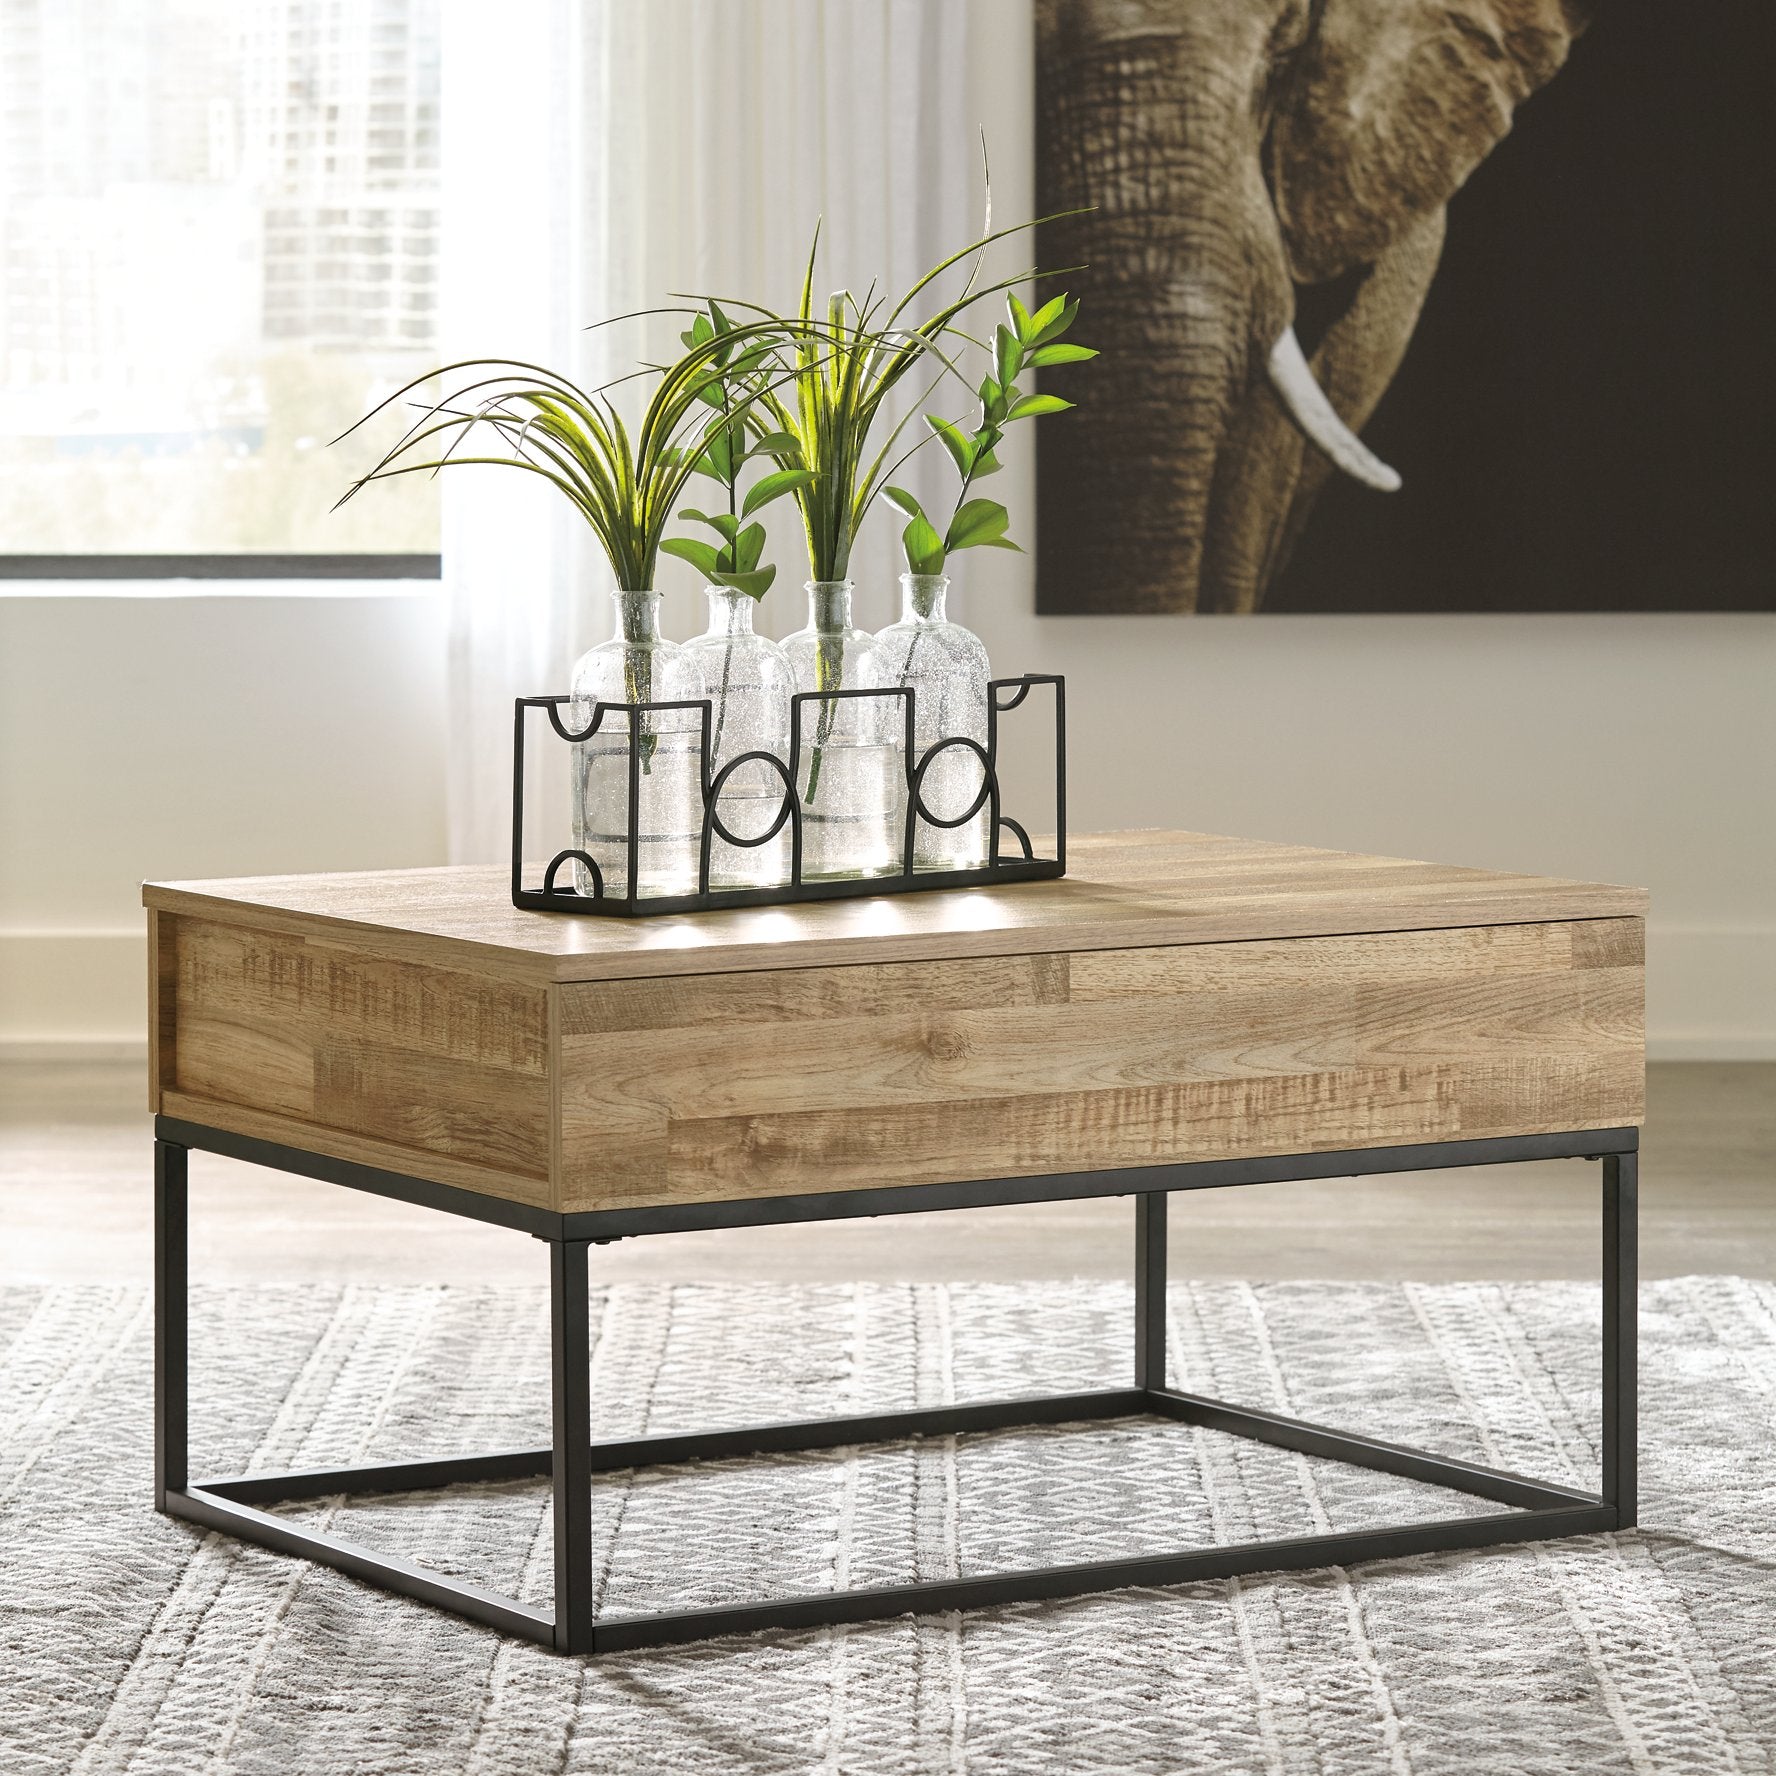 Gerdanet Table Set - Half Price Furniture